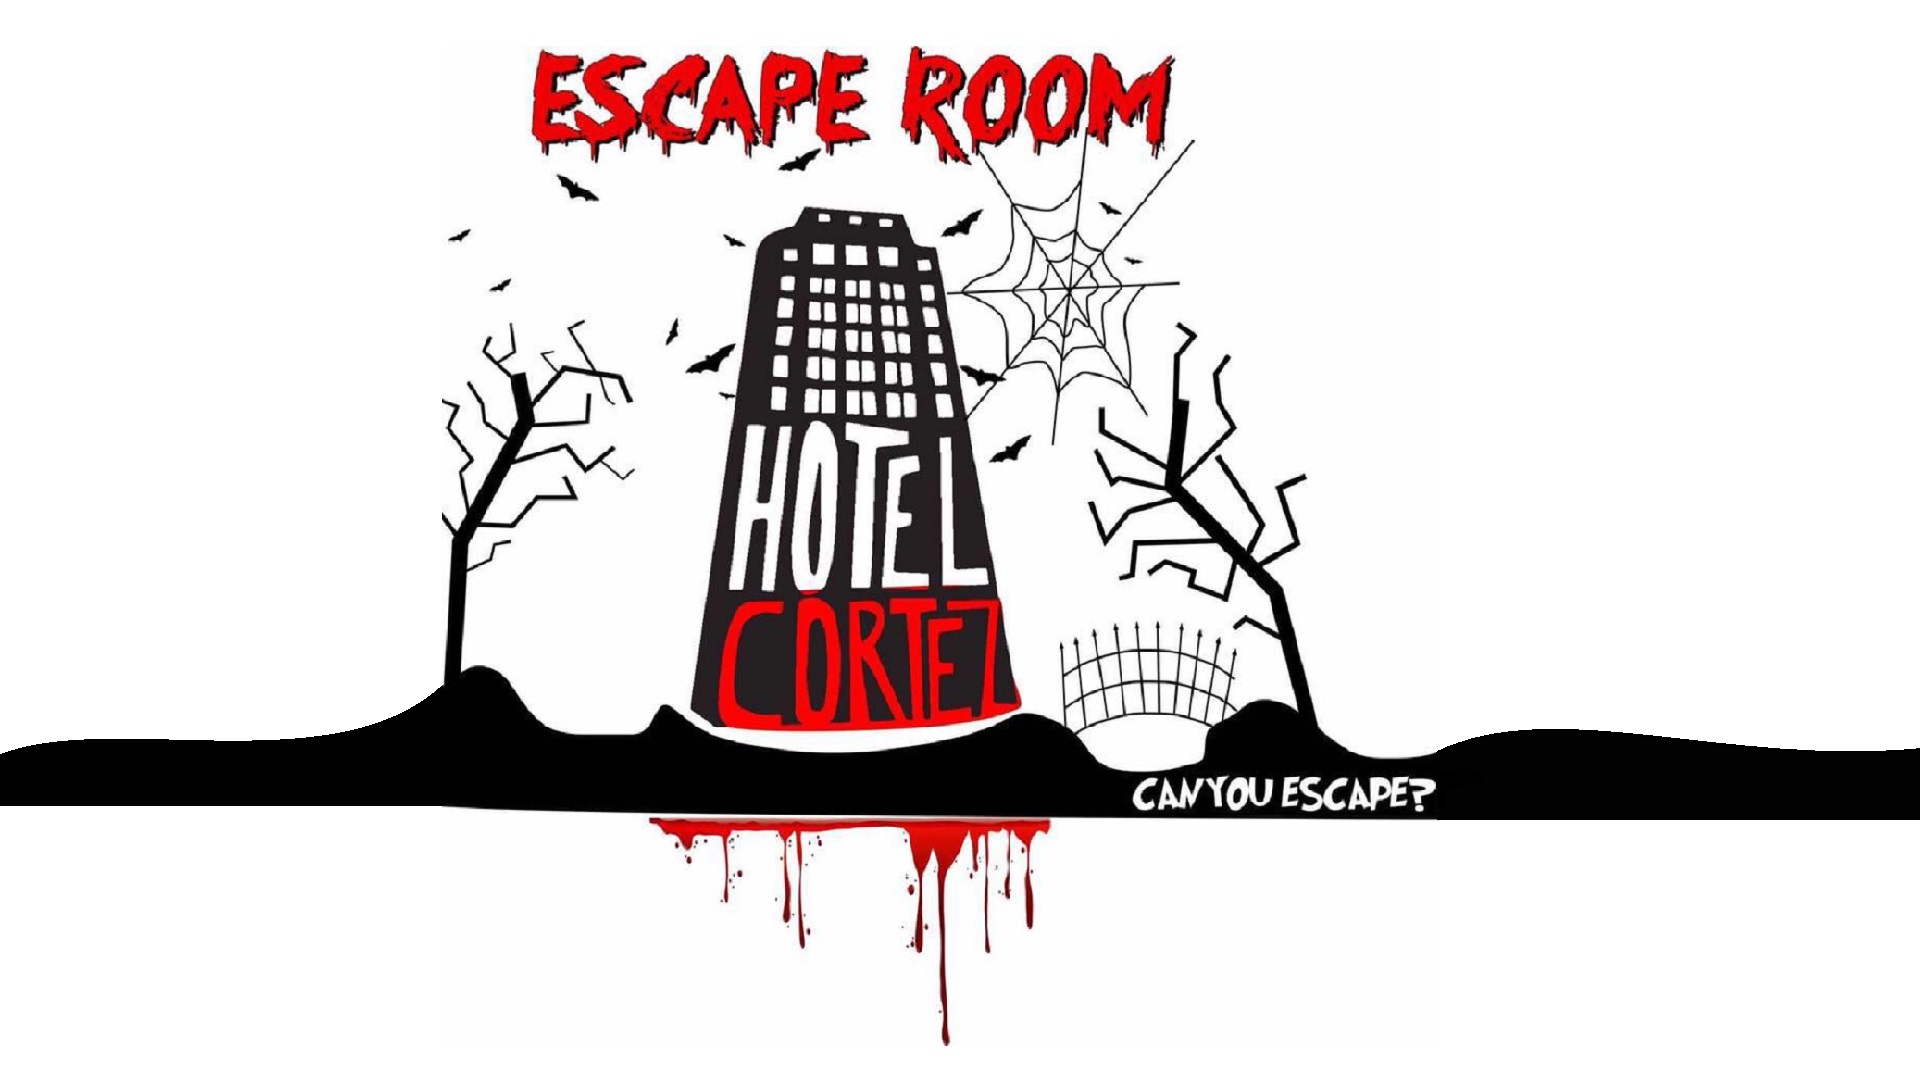 Hotel Cortez Escape Room